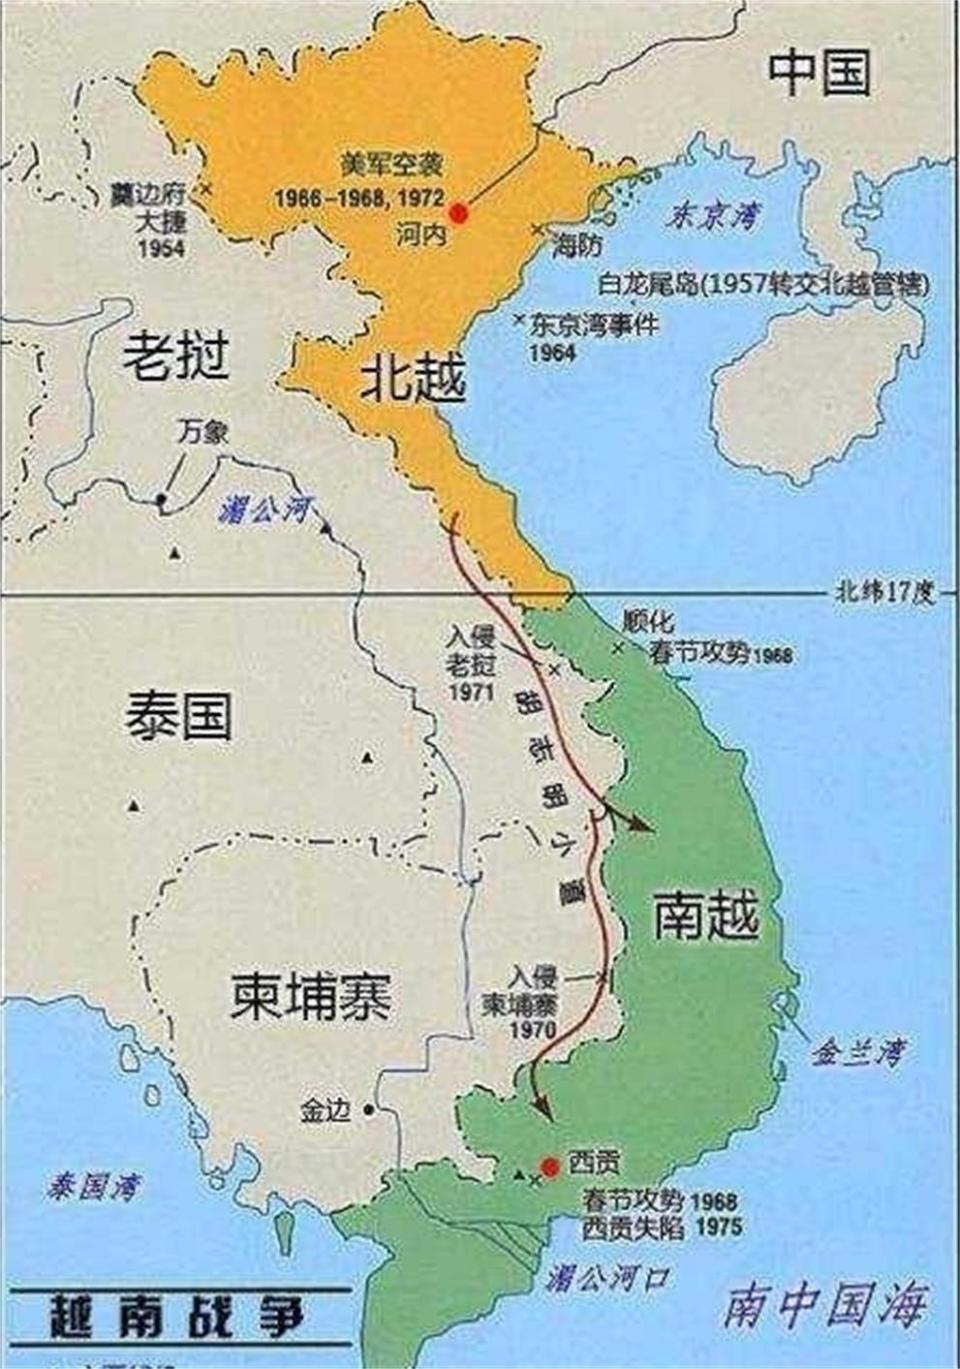 由此可见,唐朝的时候,越南的确是中原王朝的领土